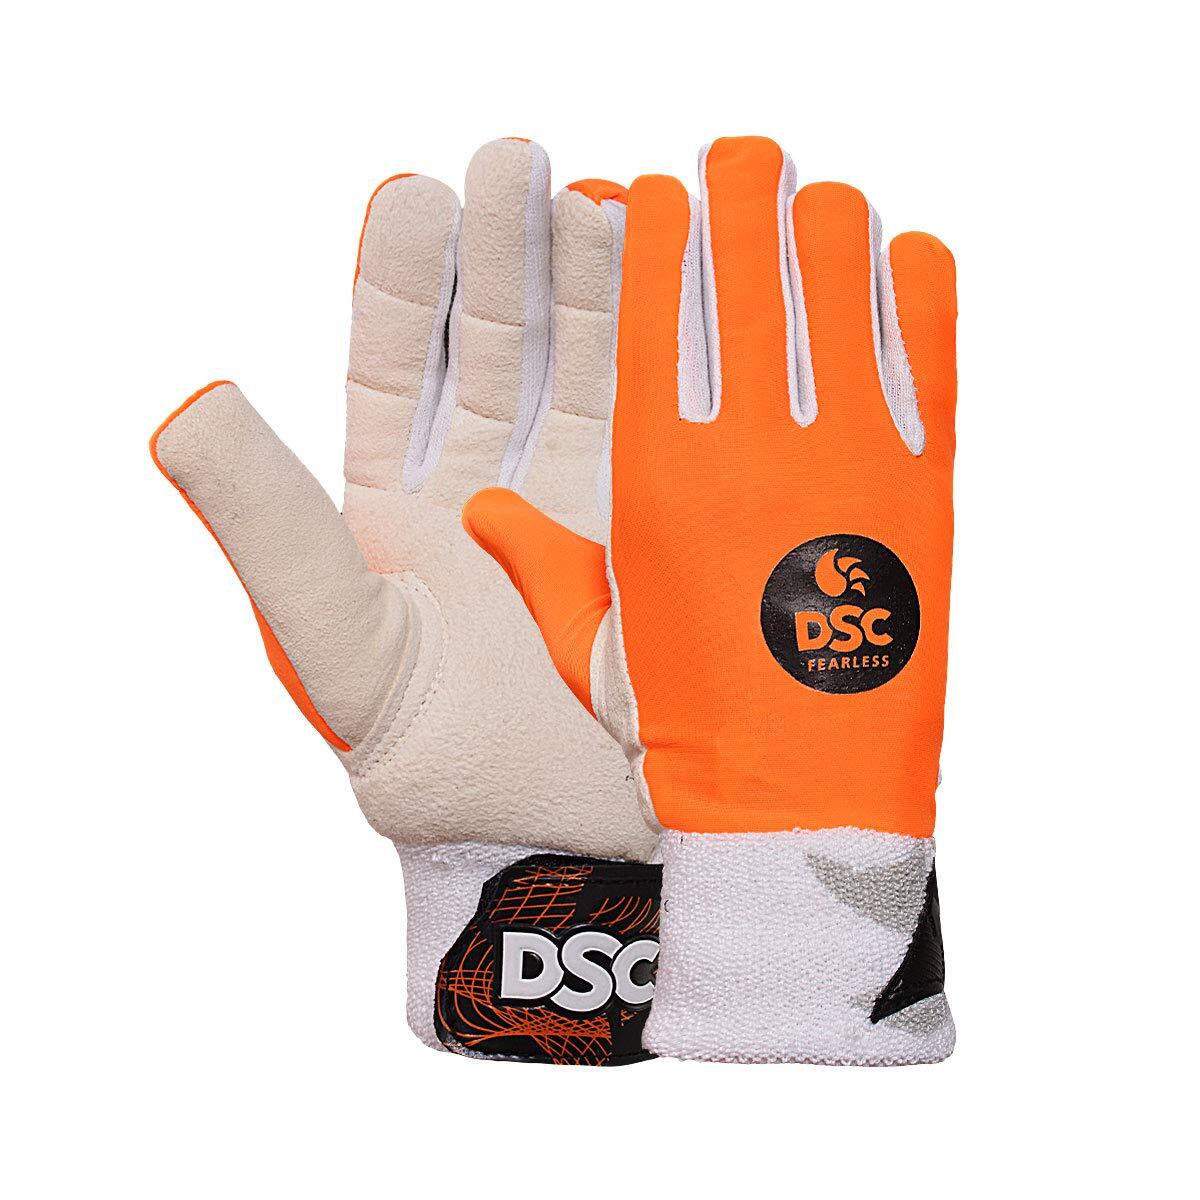 DSC Pro Wicket keeping Inner Gloves 1/5